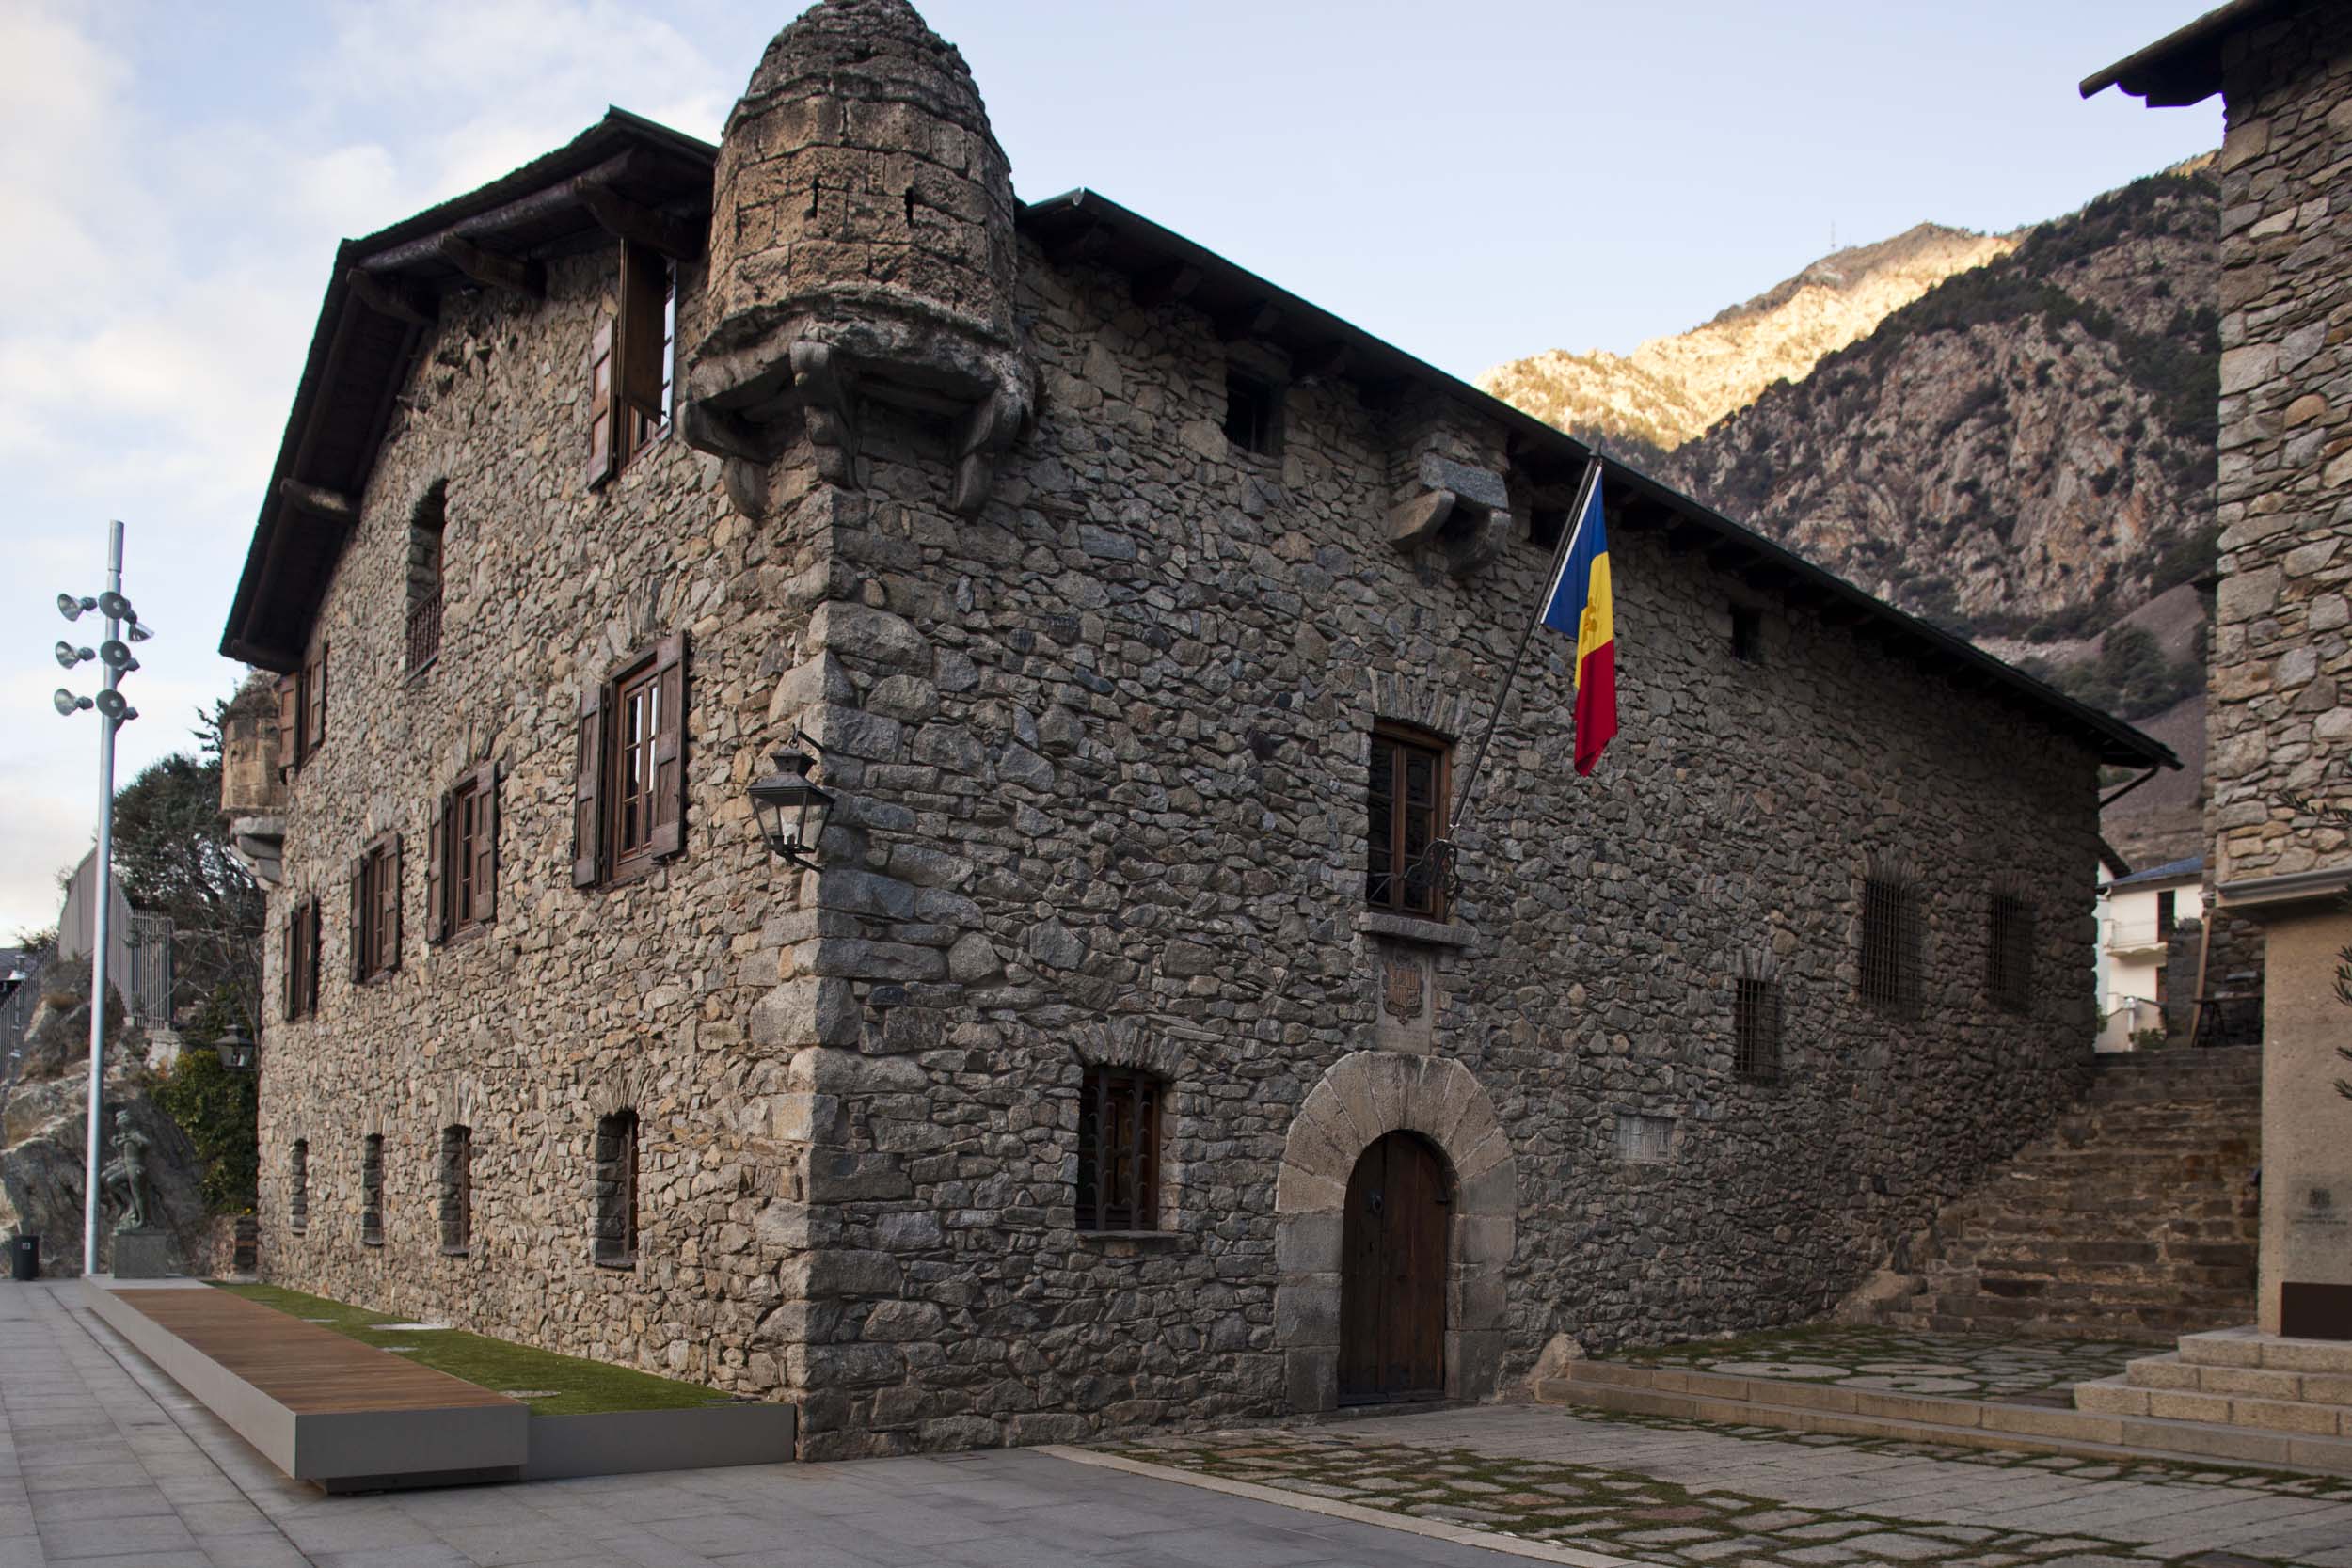 Consell General del Principat d'Andorra (Parliament)